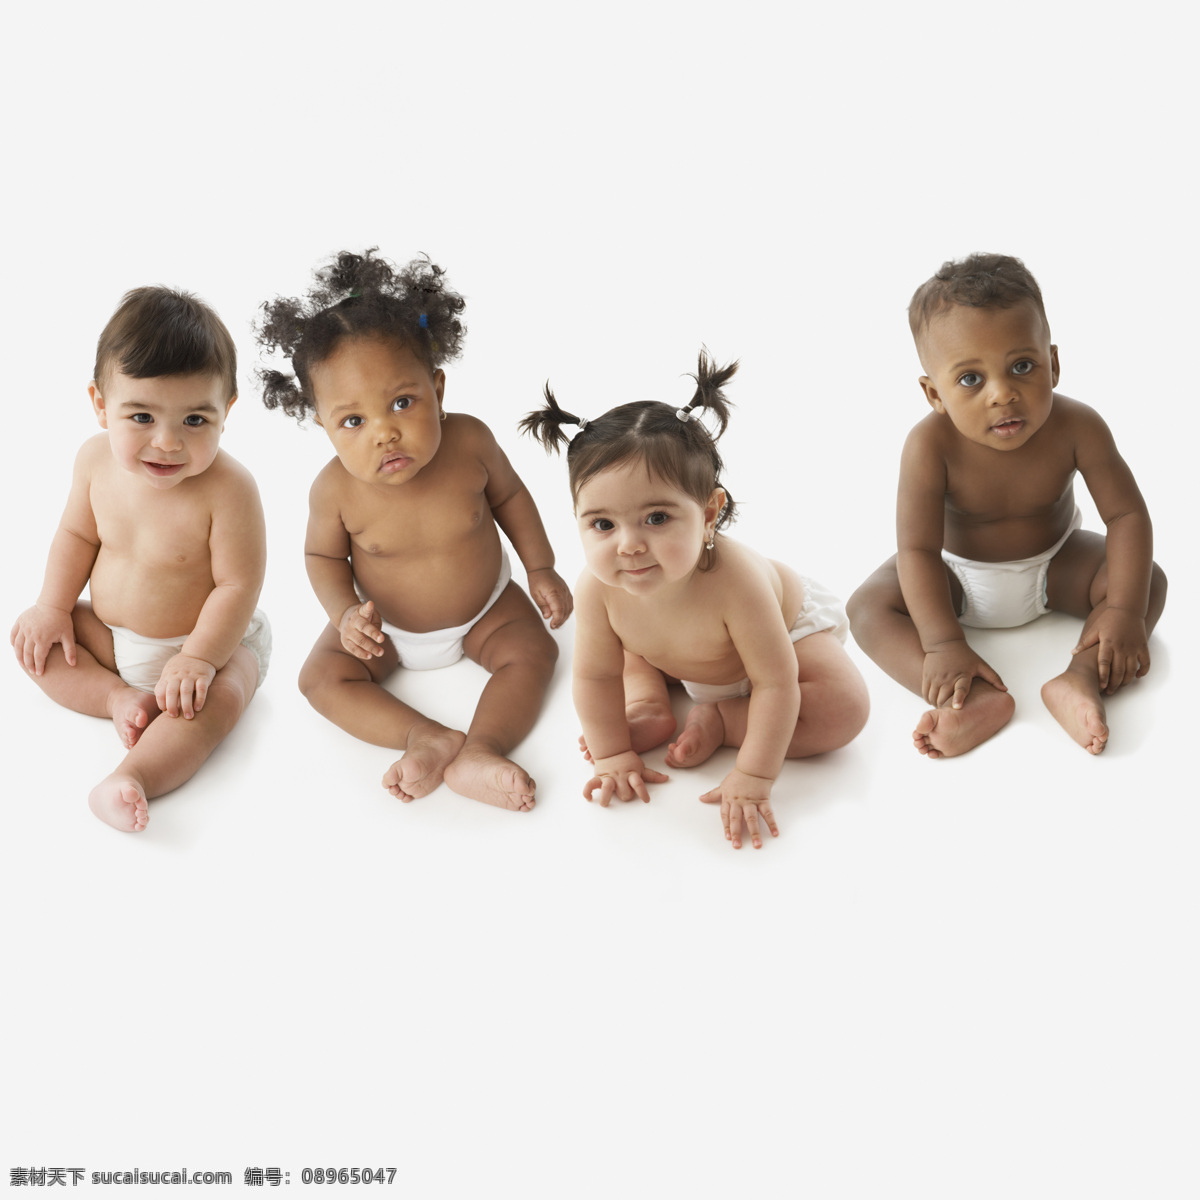 男婴 女婴 儿童 宝宝 婴儿 婴幼儿 小宝贝 健康宝宝 beby 黑人宝宝 儿童图片 人物图片